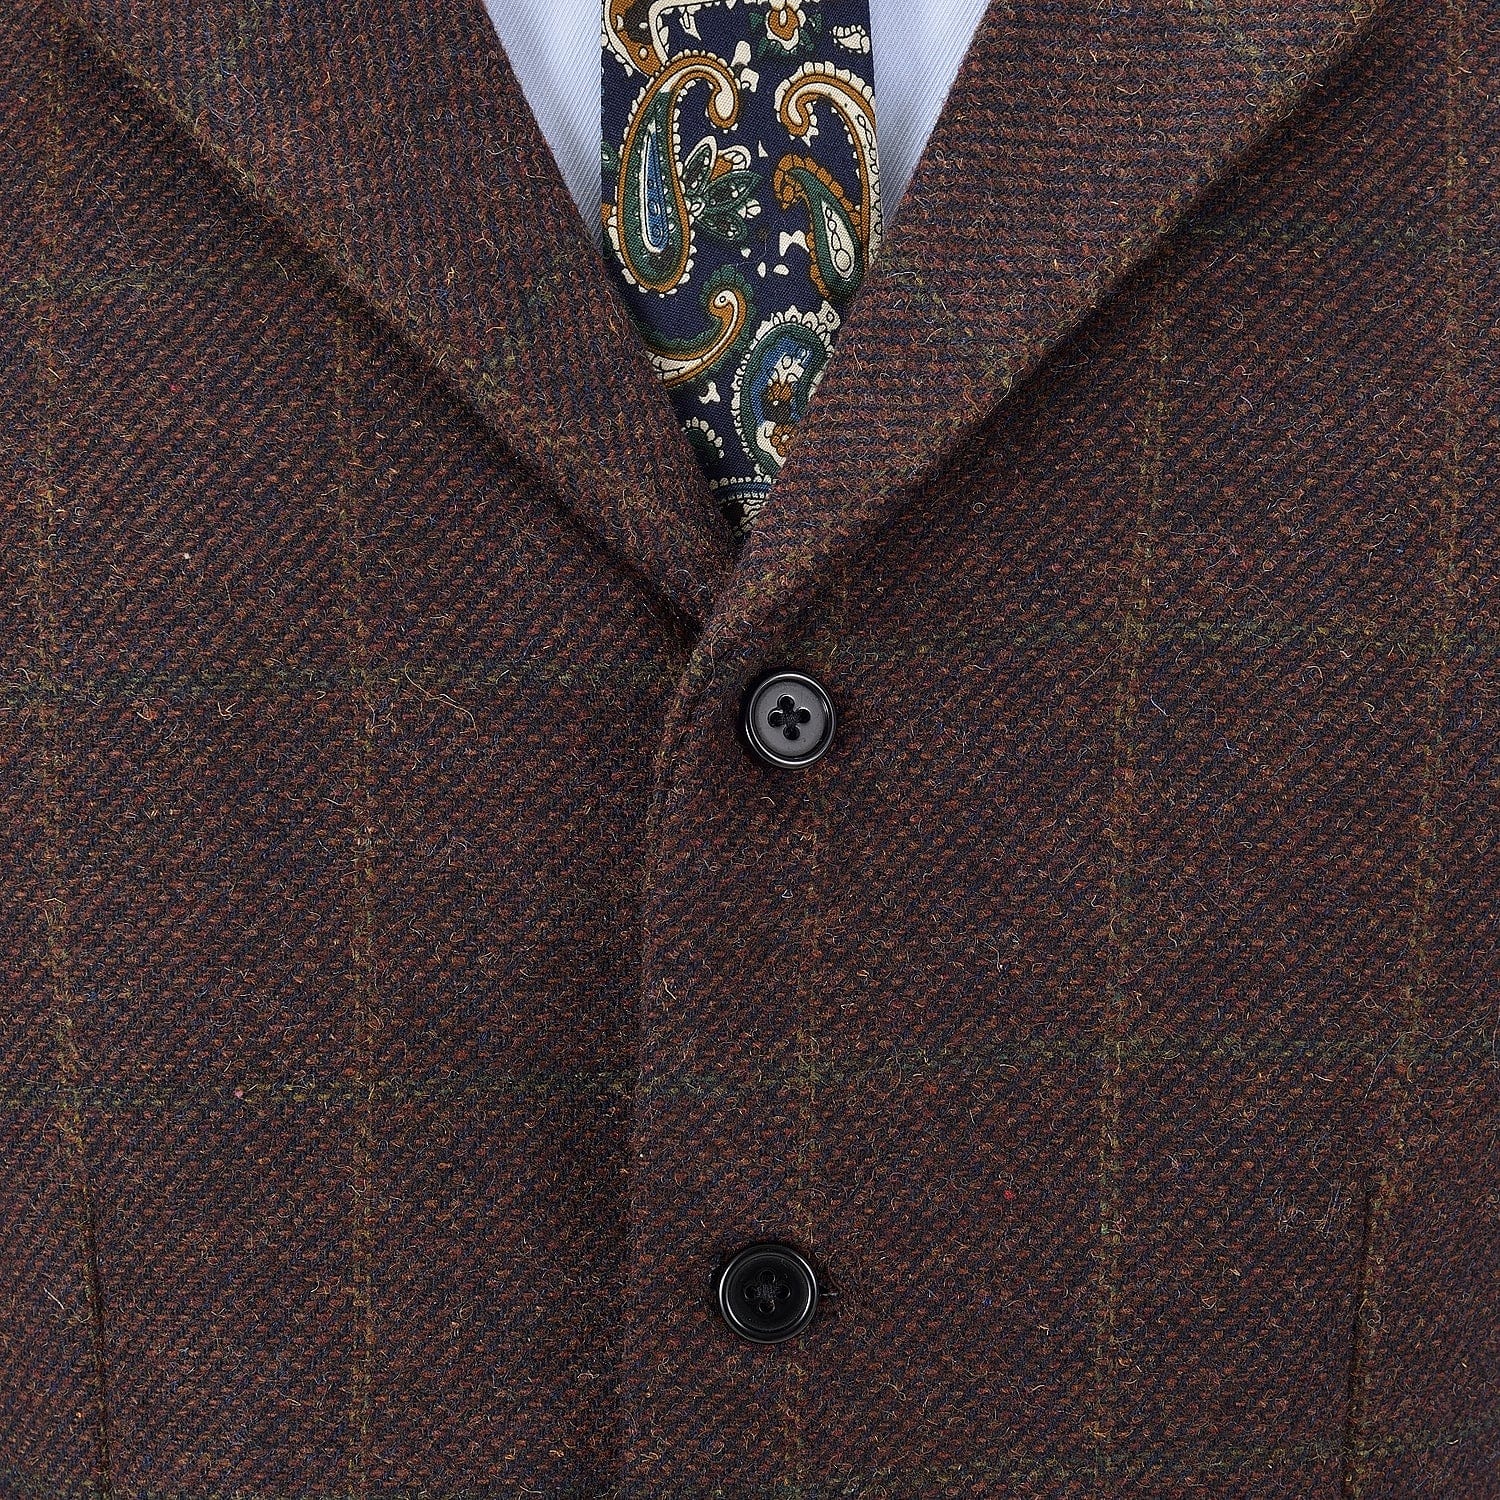 ceehuteey Men's Formal Notch Lapel Suit Vest Plaid Waistcoat